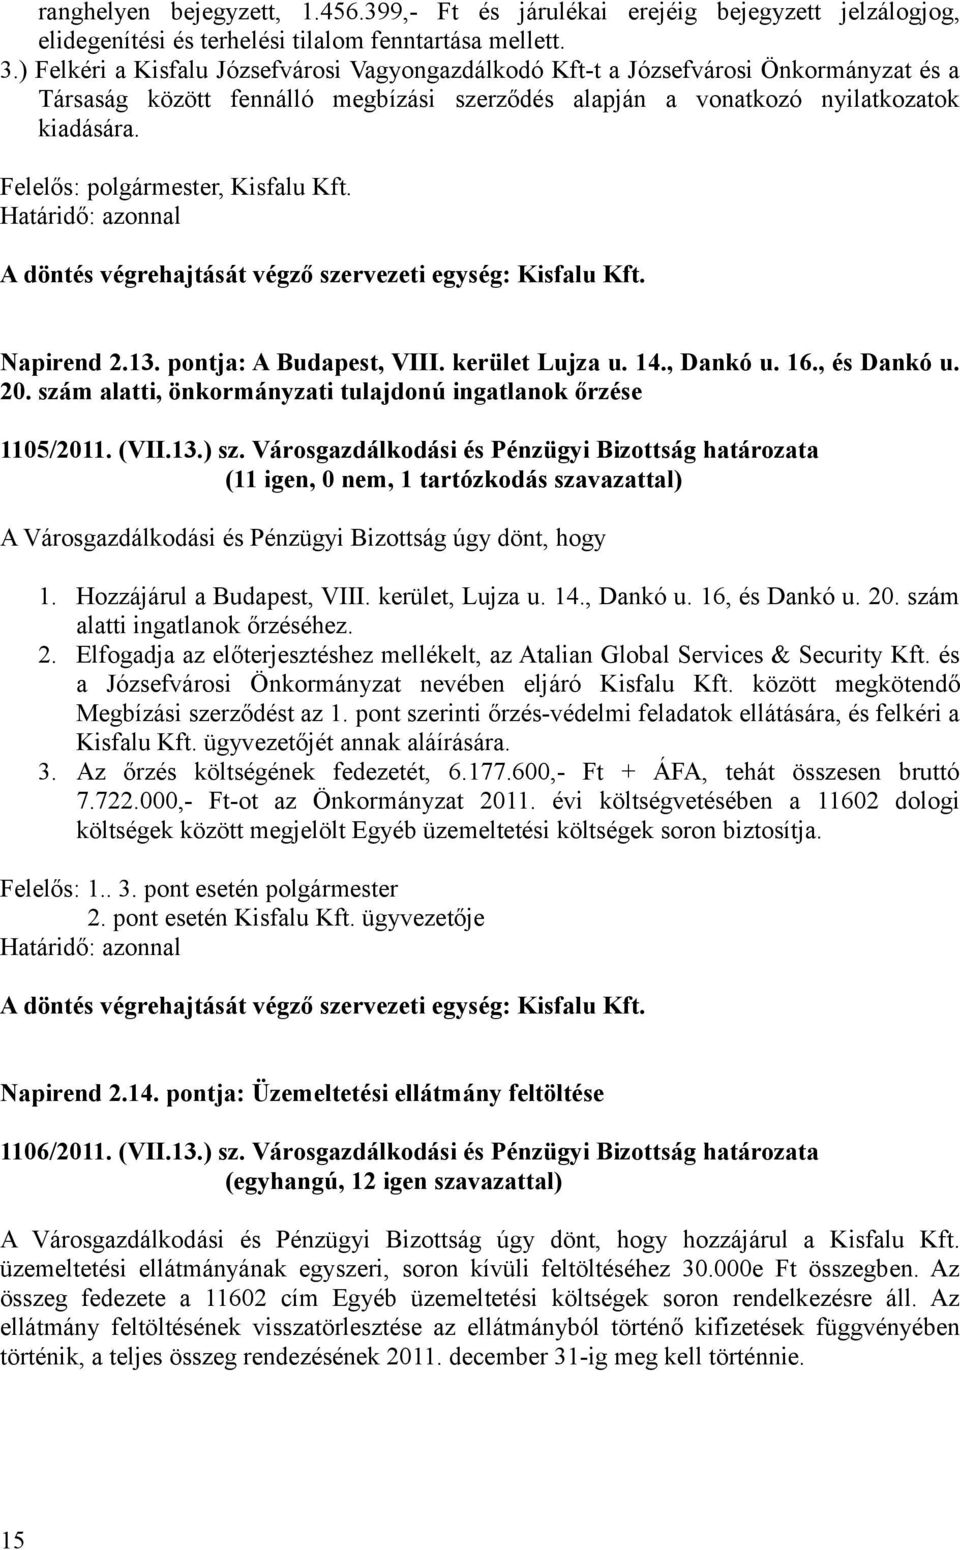 Napirend 2.13. pontja: A Budapest, VIII. kerület Lujza u. 14., Dankó u. 16., és Dankó u. 20. szám alatti, önkormányzati tulajdonú ingatlanok őrzése 1105/2011. (VII.13.) sz.